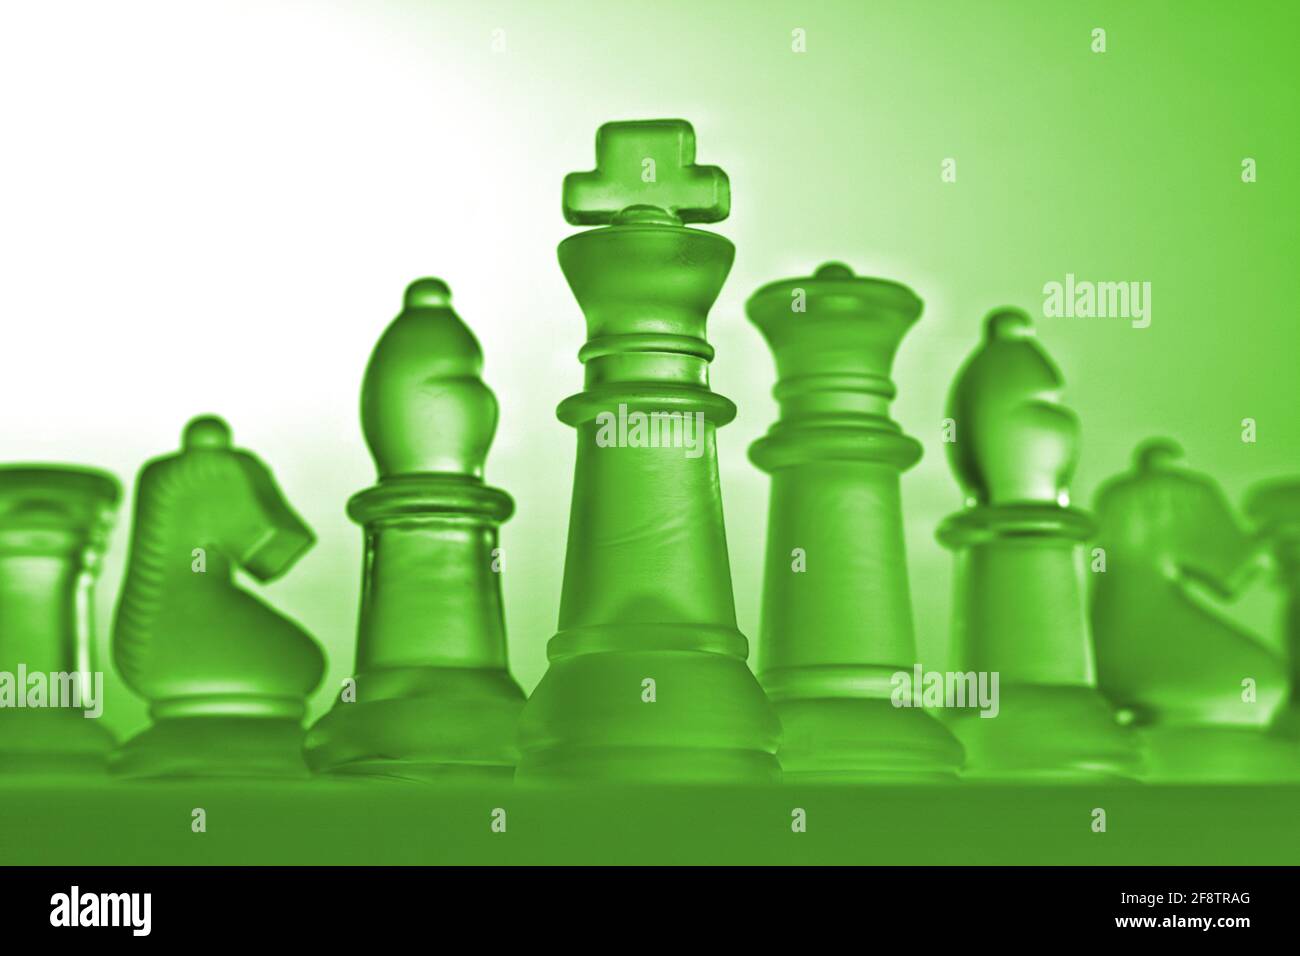 Germania. 11 Apr 2021. Pezzi simbolici di scacchi di un gioco di scacchi  fatto di vetro con uno sfondo neutro. Dettaglio di alcune figure bianche  con un'atmosfera di luce verde dal punto